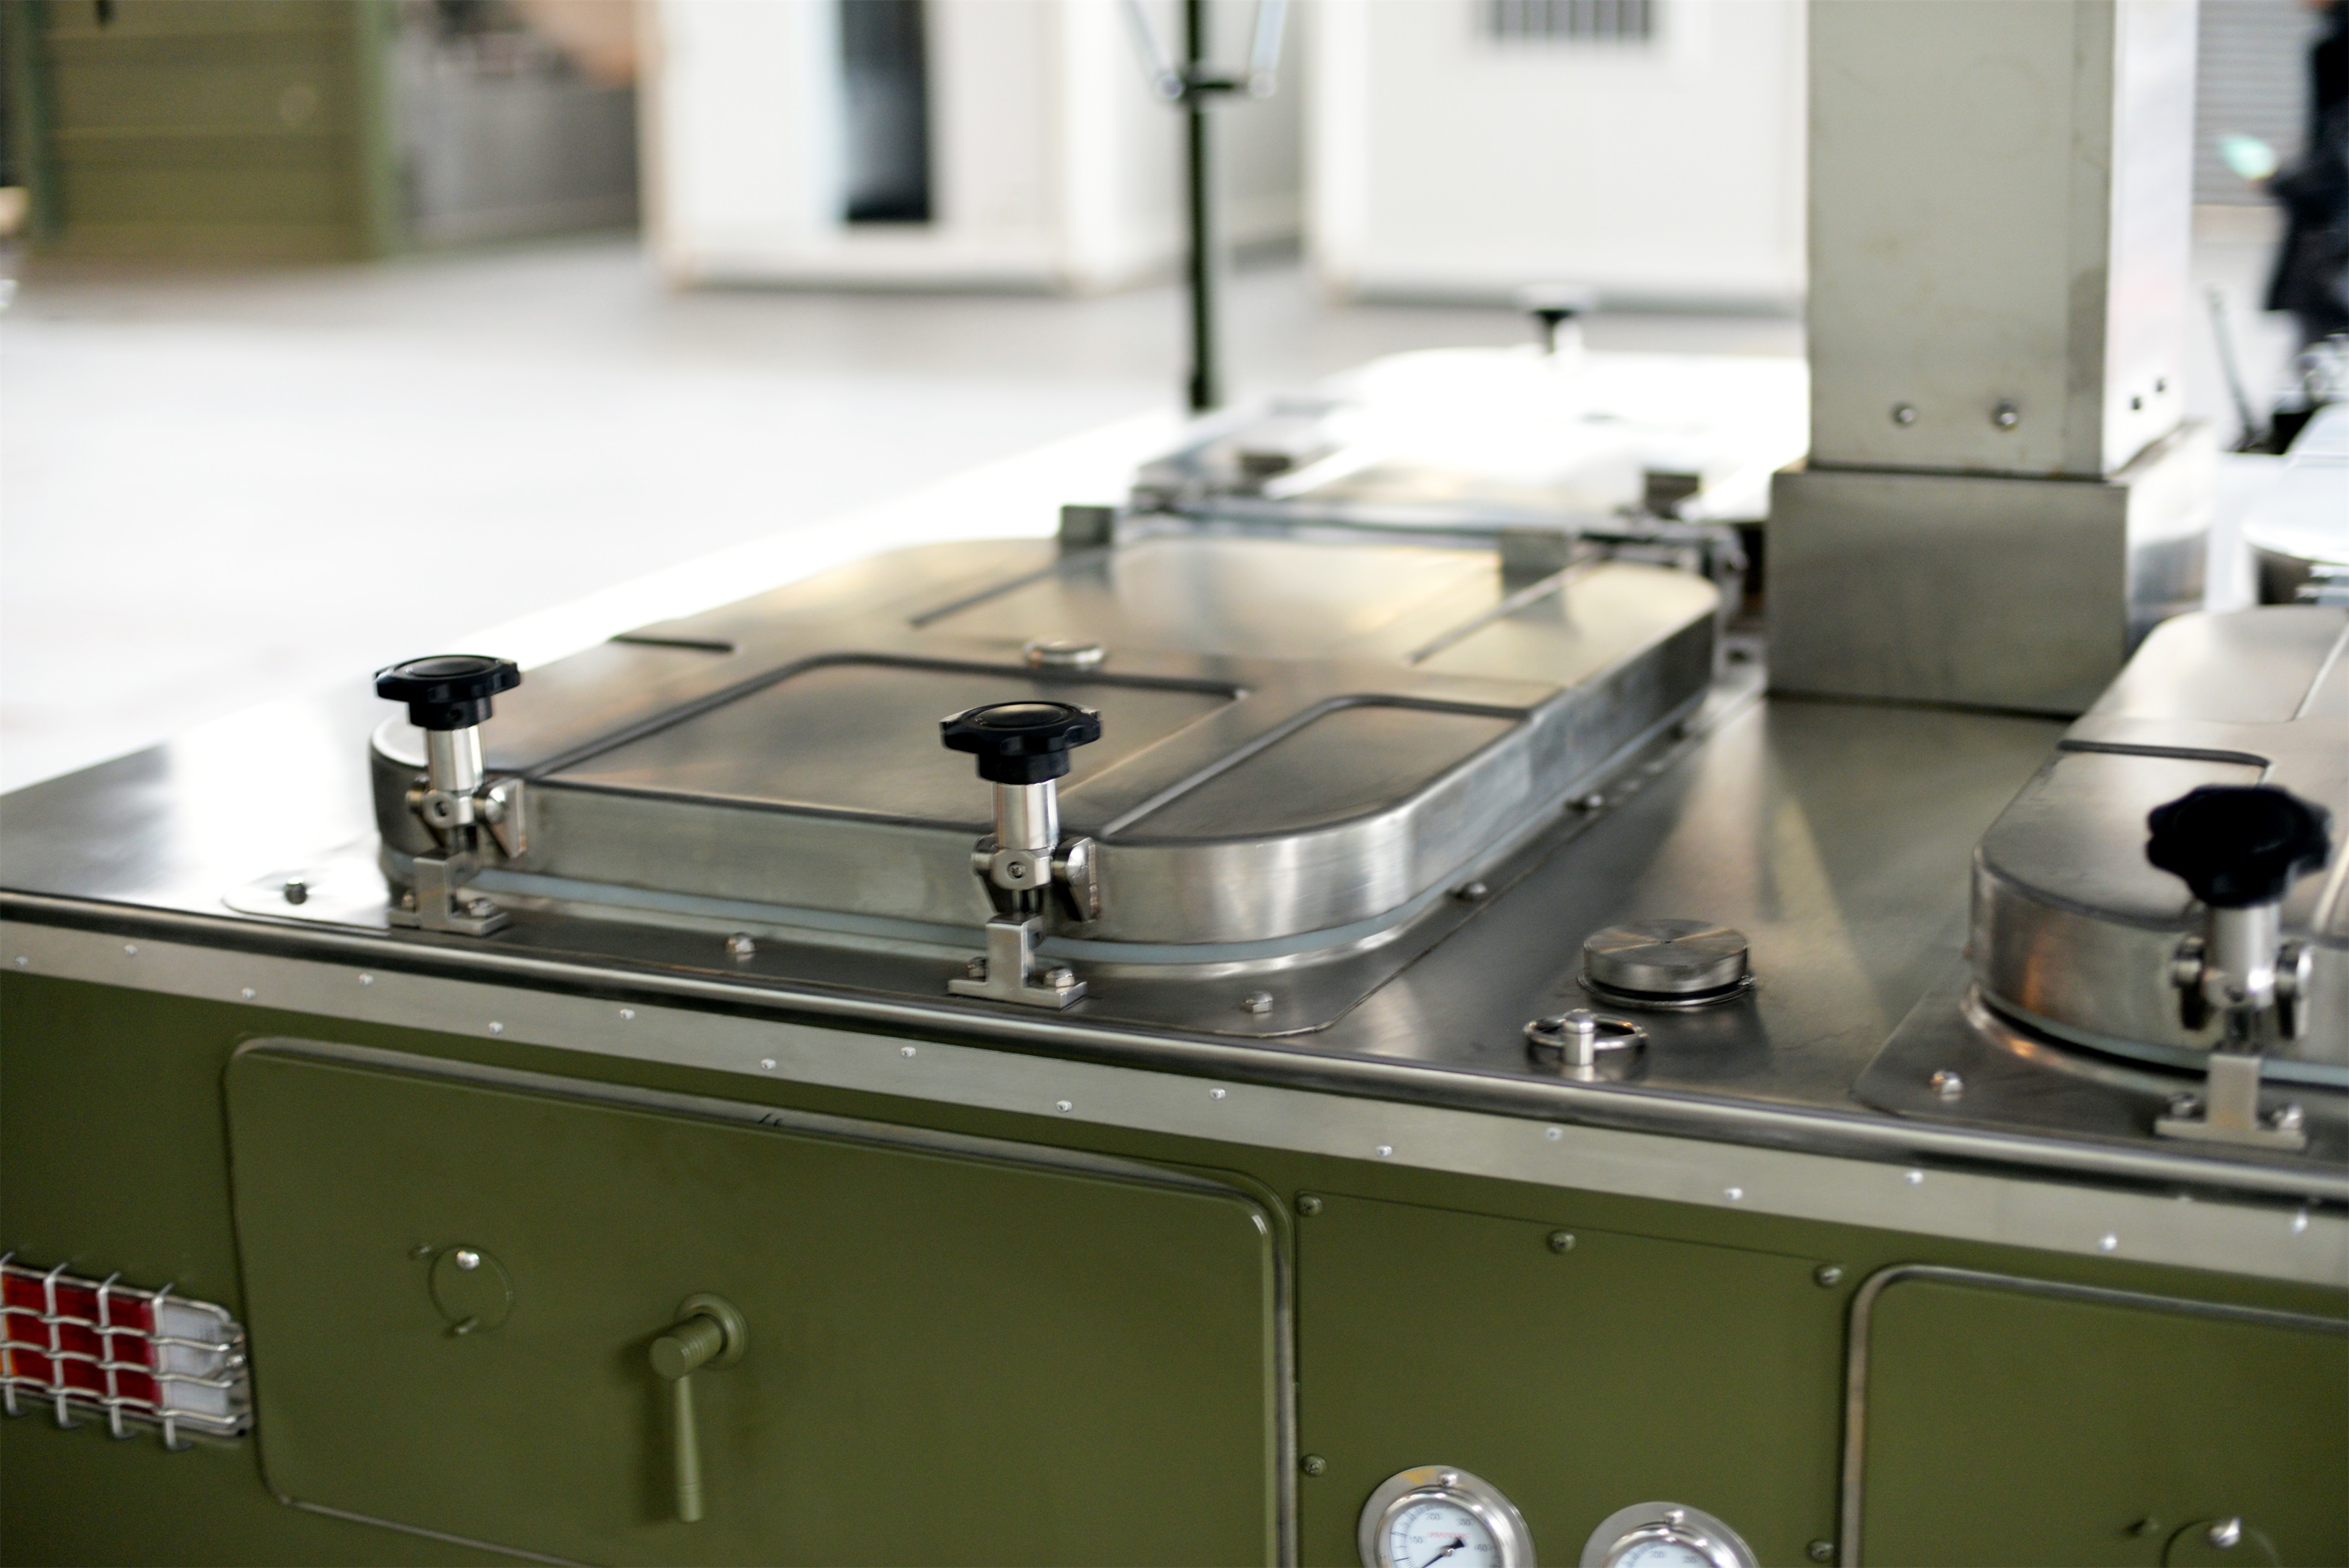 Remorque de cuisine de cuisine mobile militaire pour activités de formation de camping à l'extérieur de l'équipement militaire de restauration alimentaire